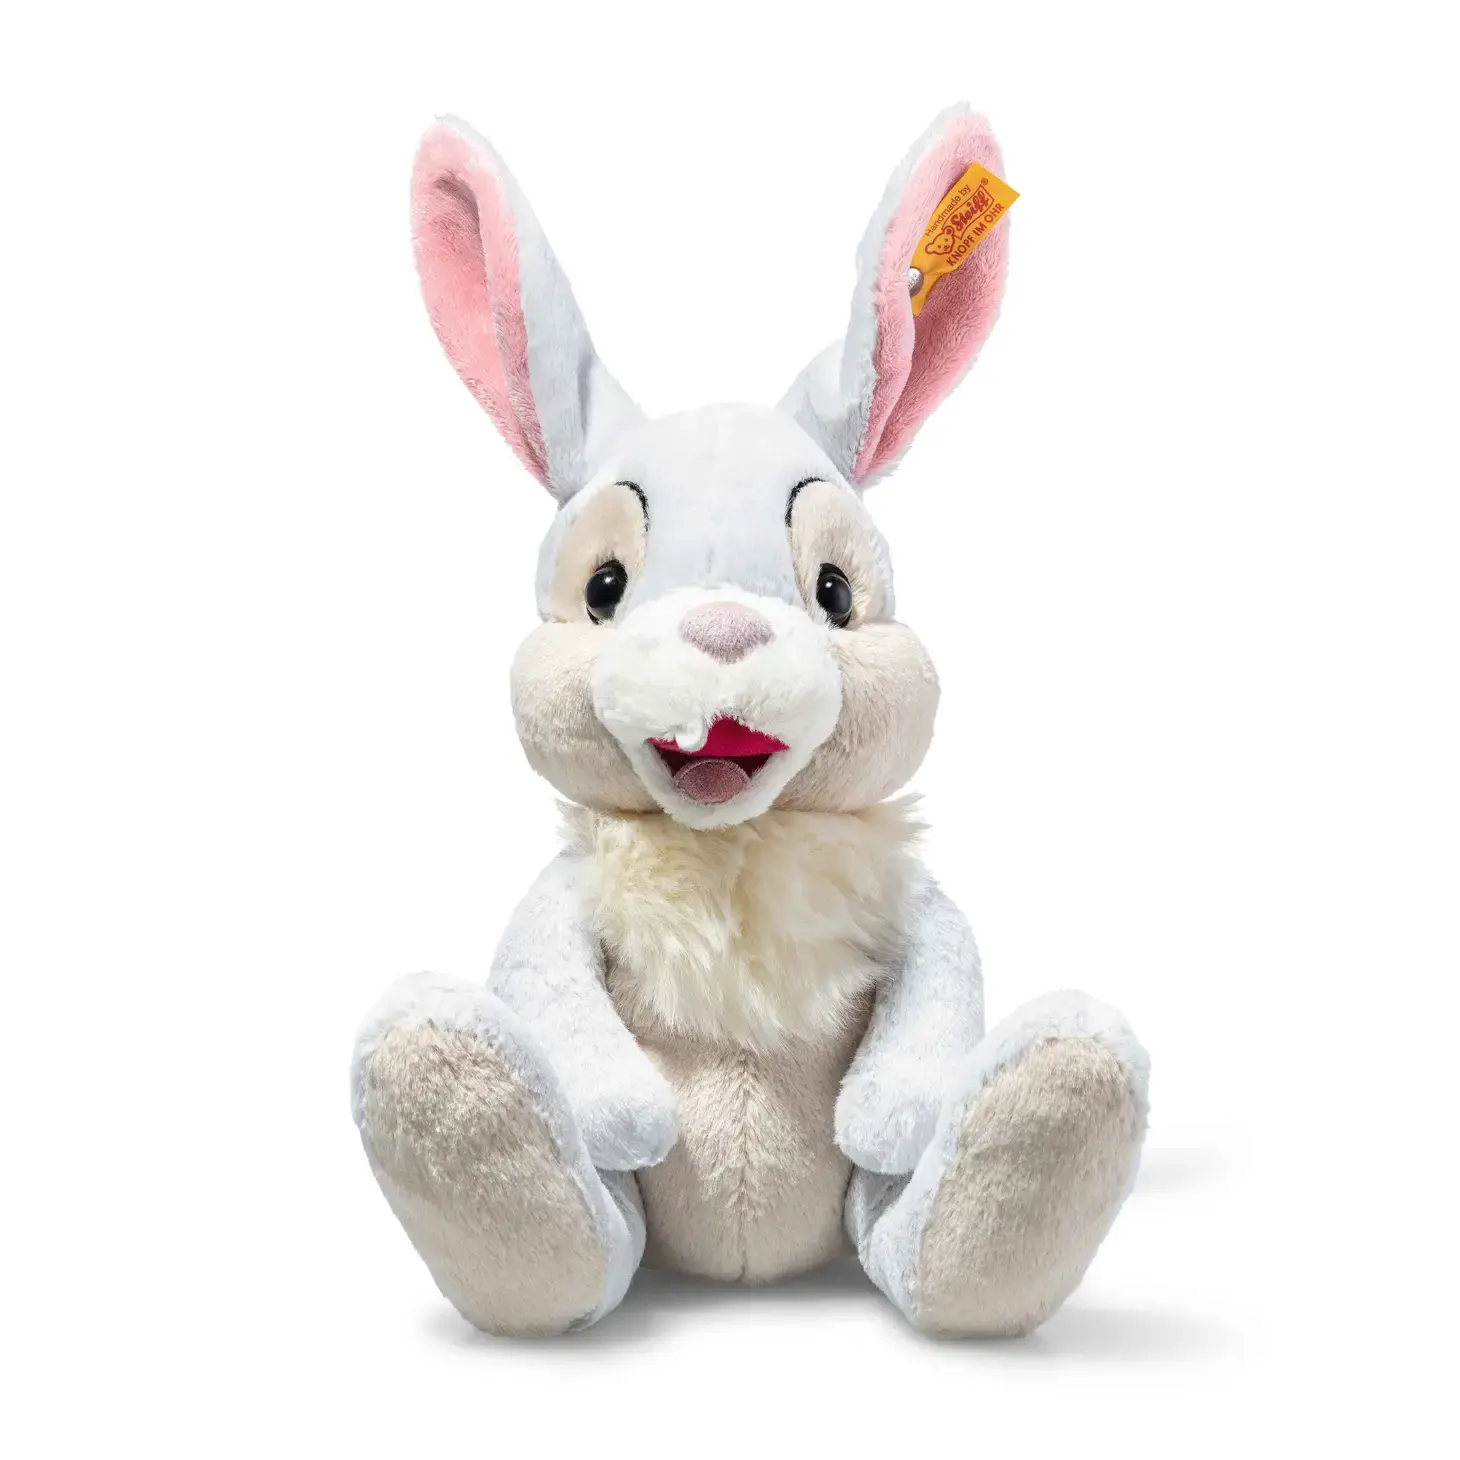 Steiff Disney's Thumper Rabbit from "Bambi" Plush Toy